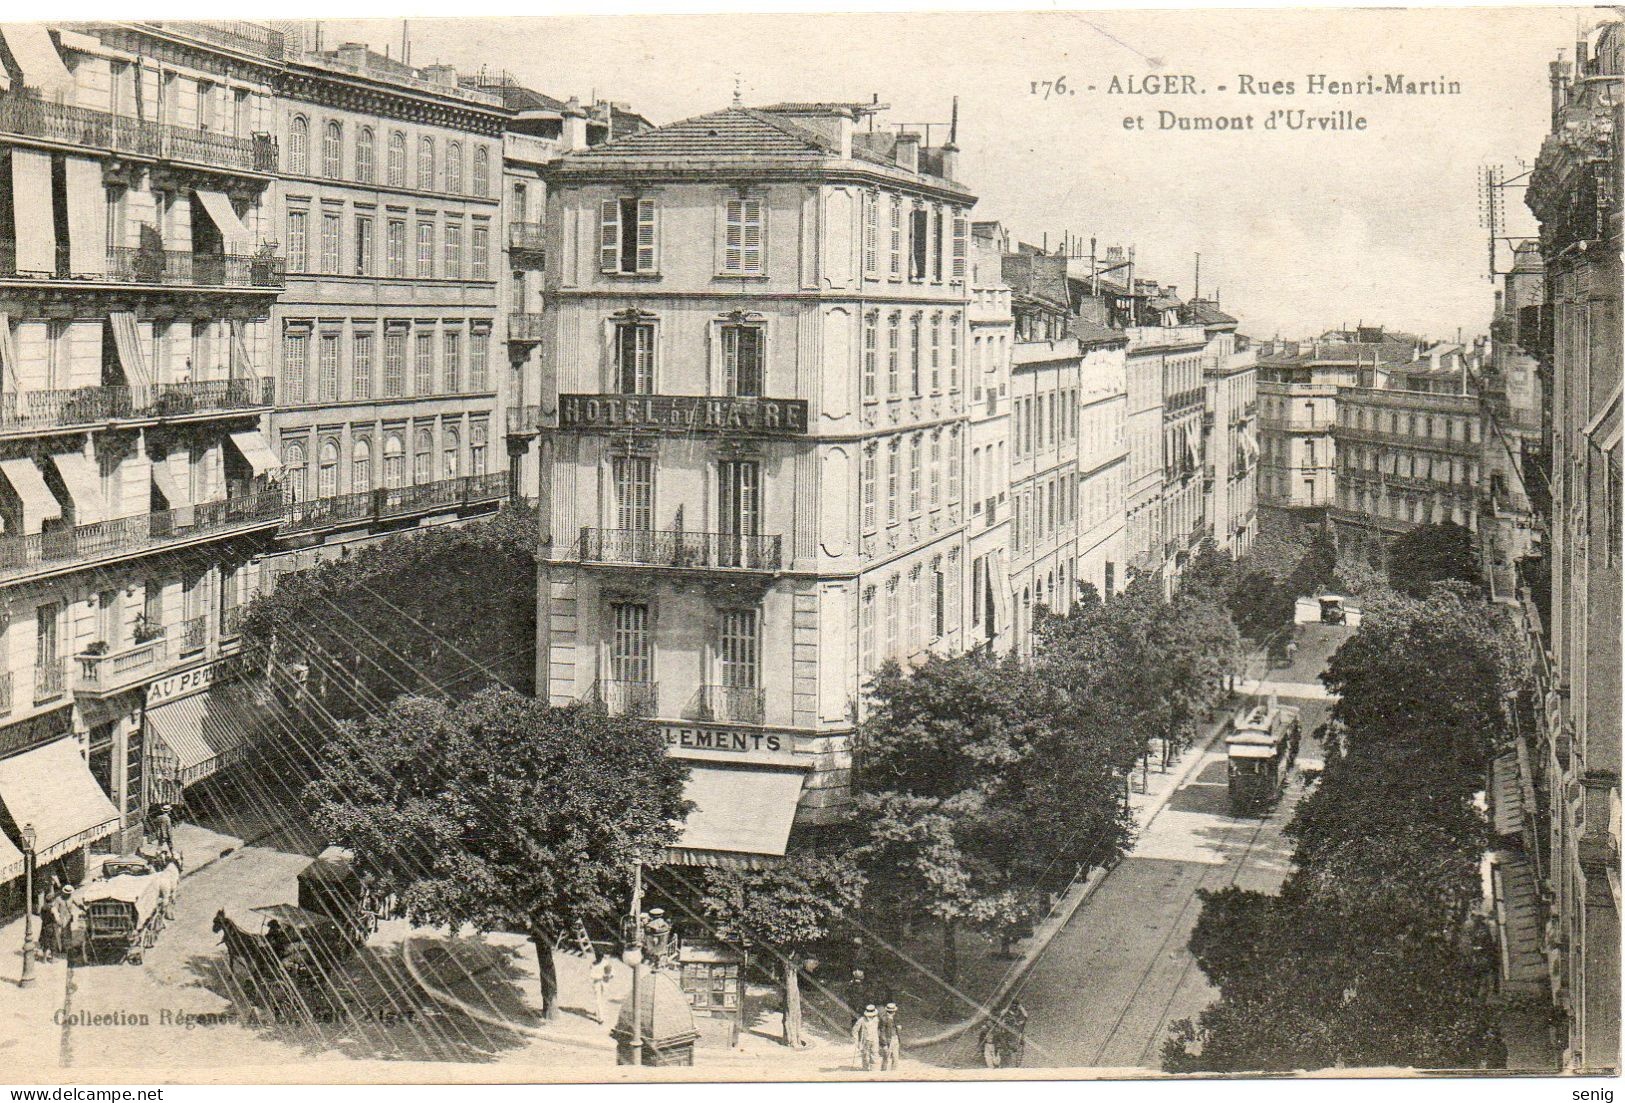 ALGERIE - ALGER - 176 - Rues Henri-Martin Et Dumont D'Urville - Collection Régence A. L. édit. Alger (Leroux) - - Alger